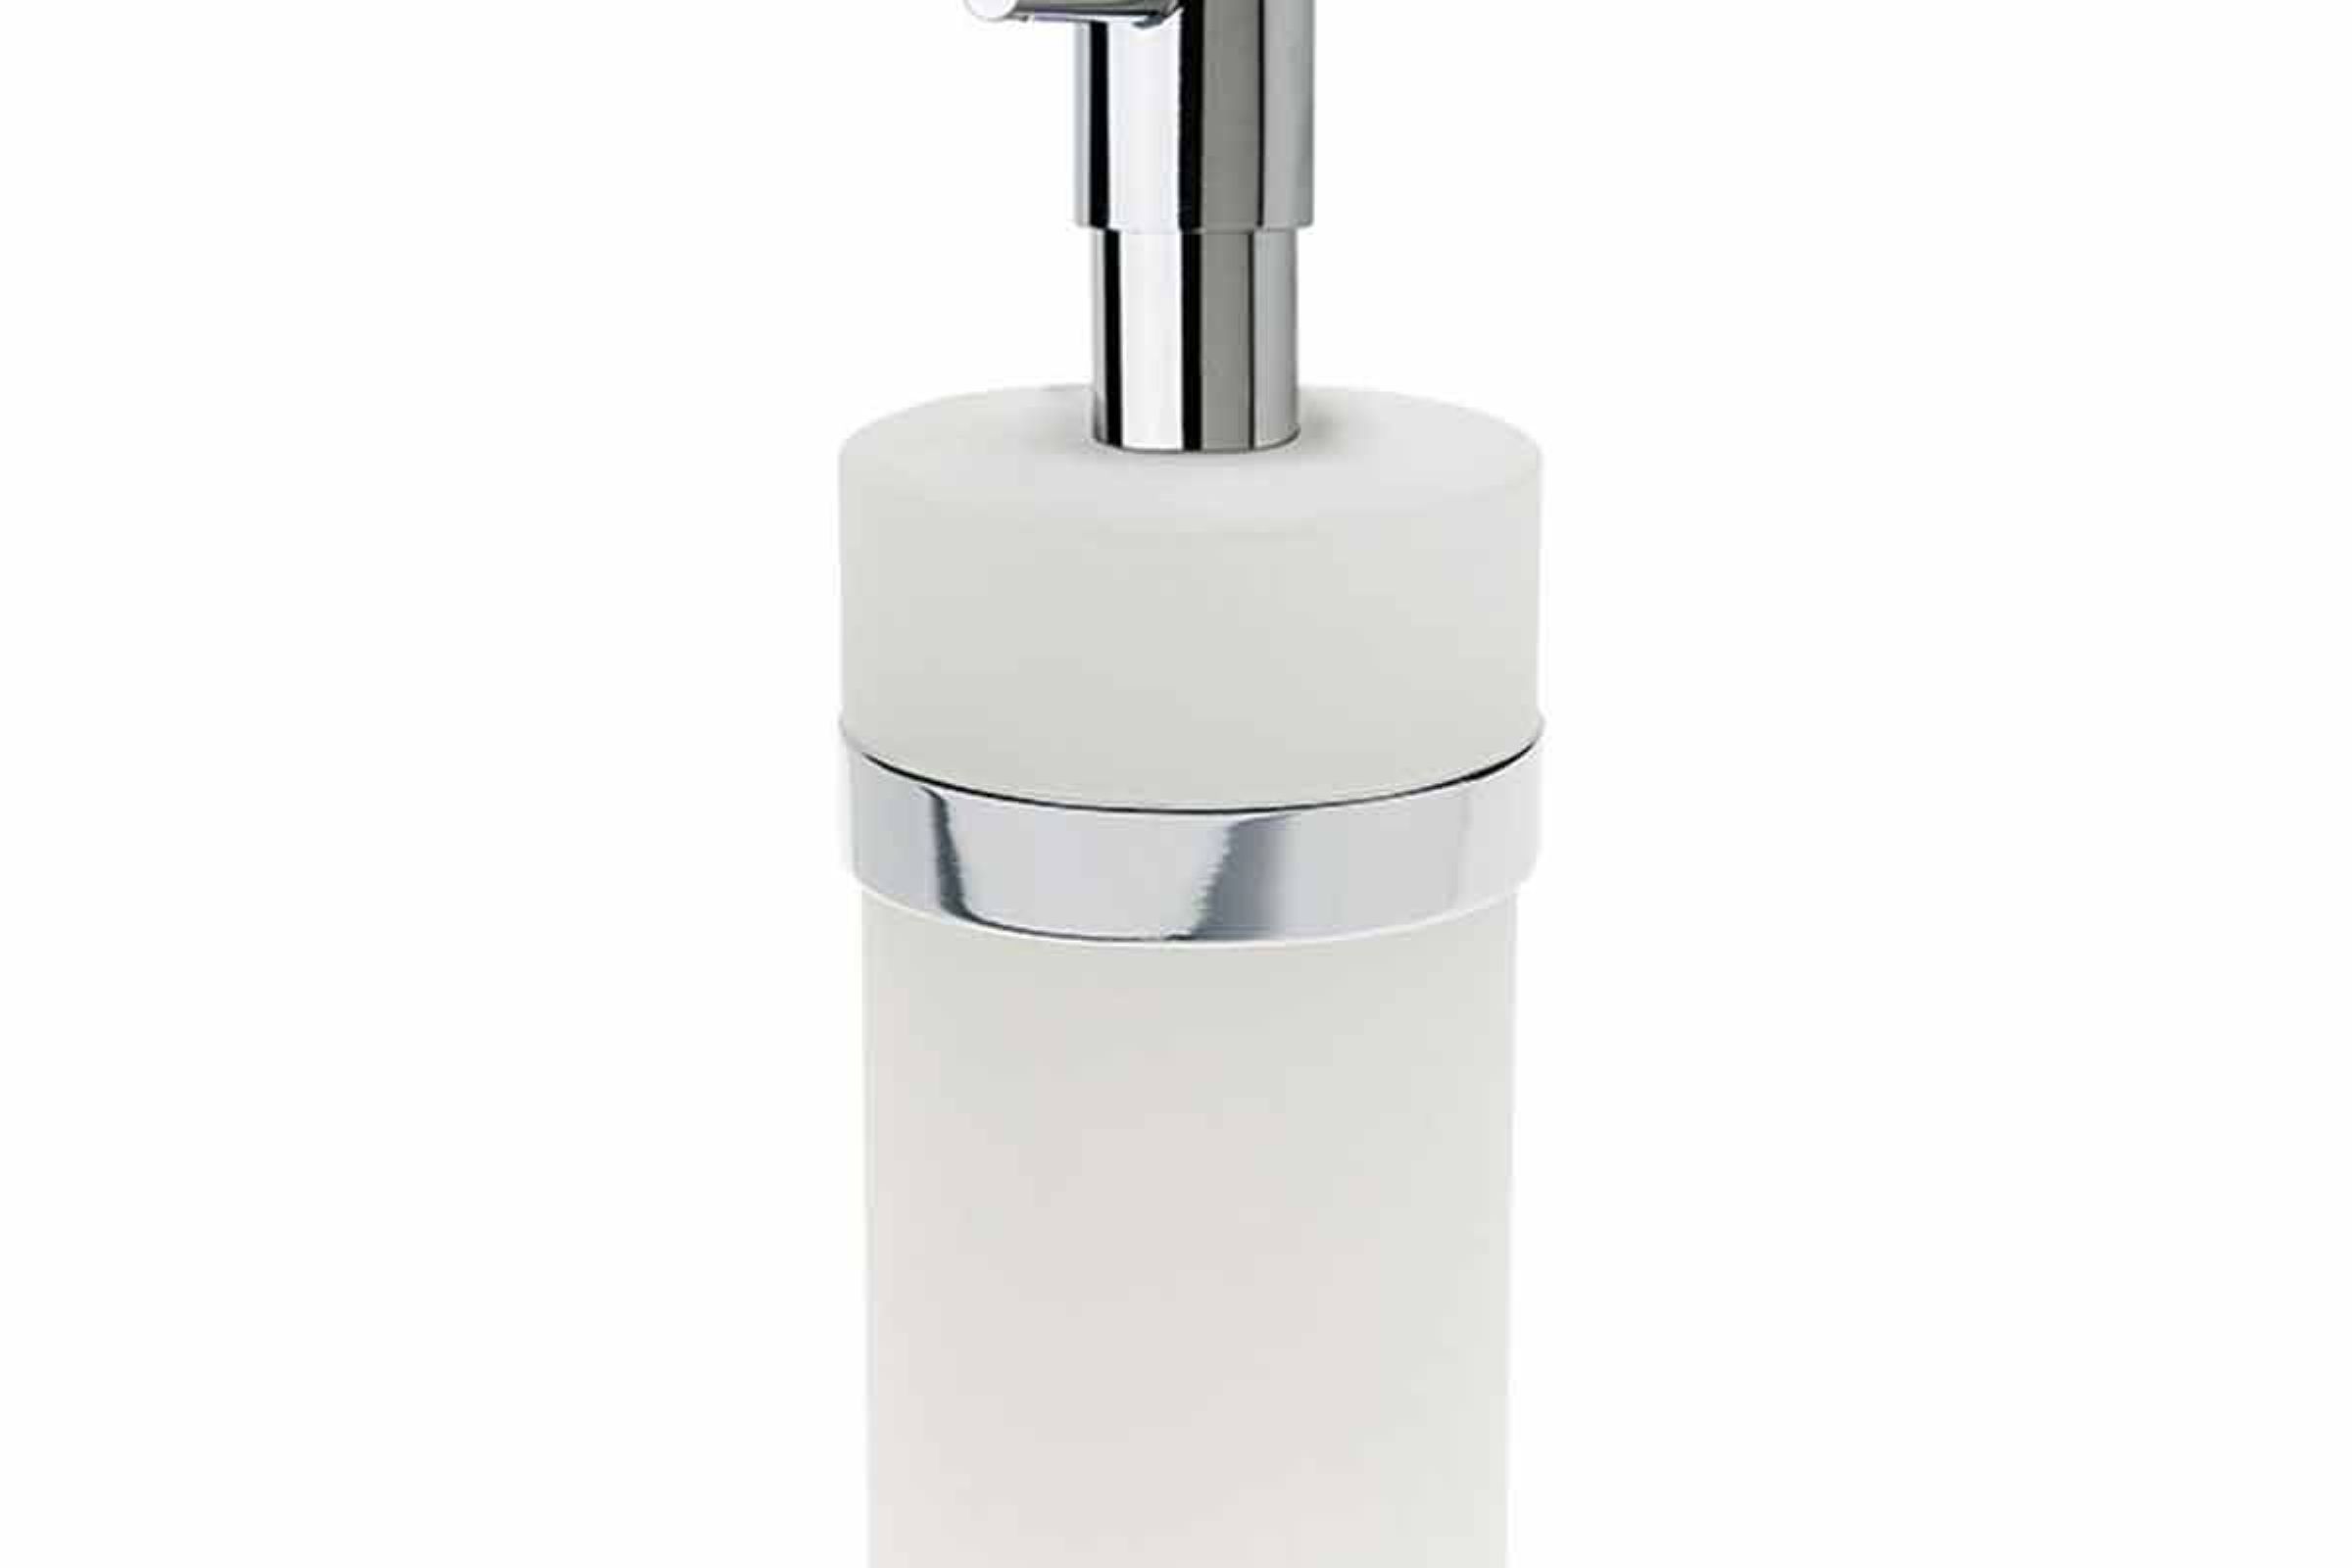 dosatore plexiglass appoggio rest standing liquid soap dispenser in plexiglass cm. 6,5x6,5x17,5 Ebe